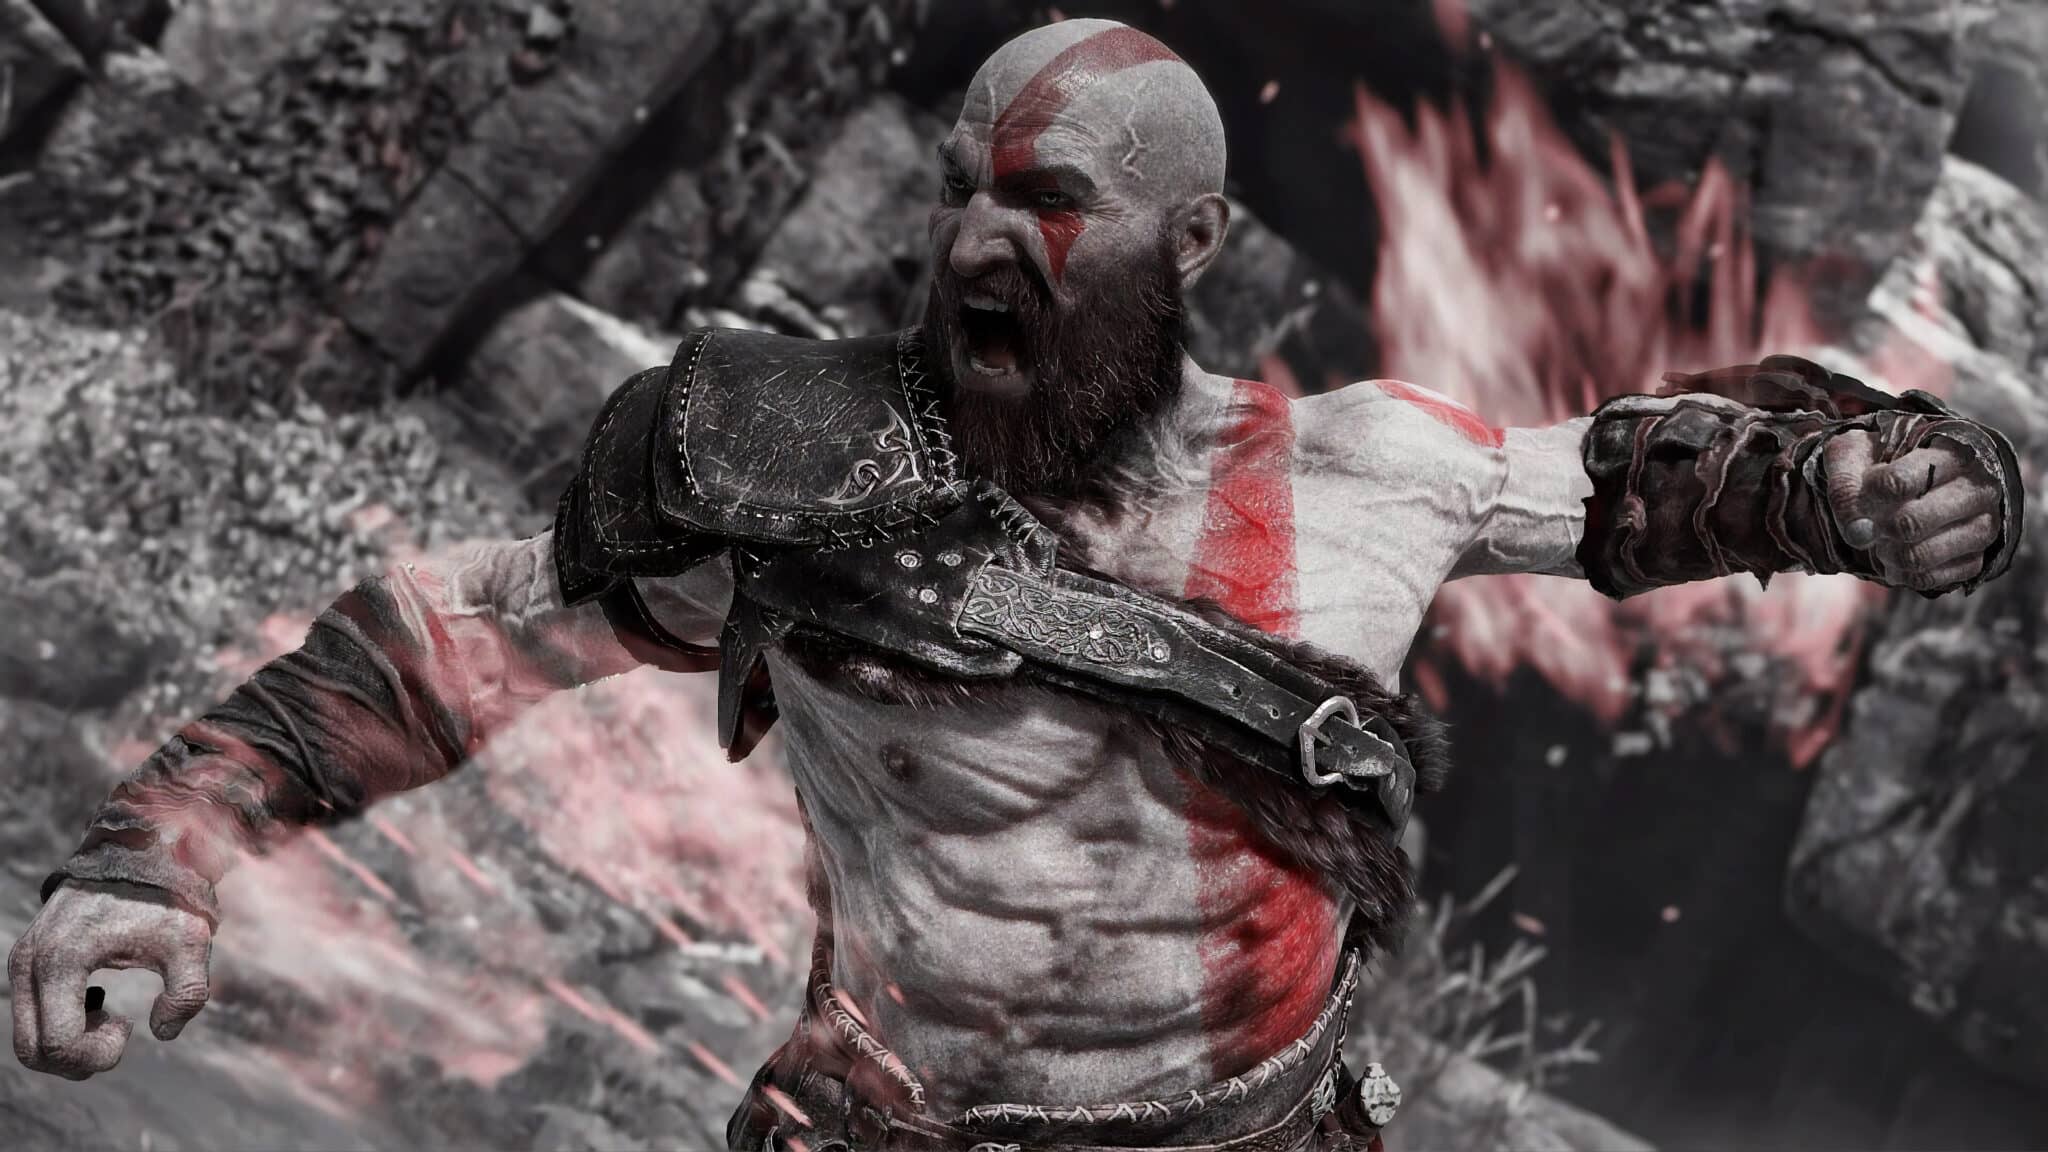 Les spoilers : Kratos n'aime pas ça